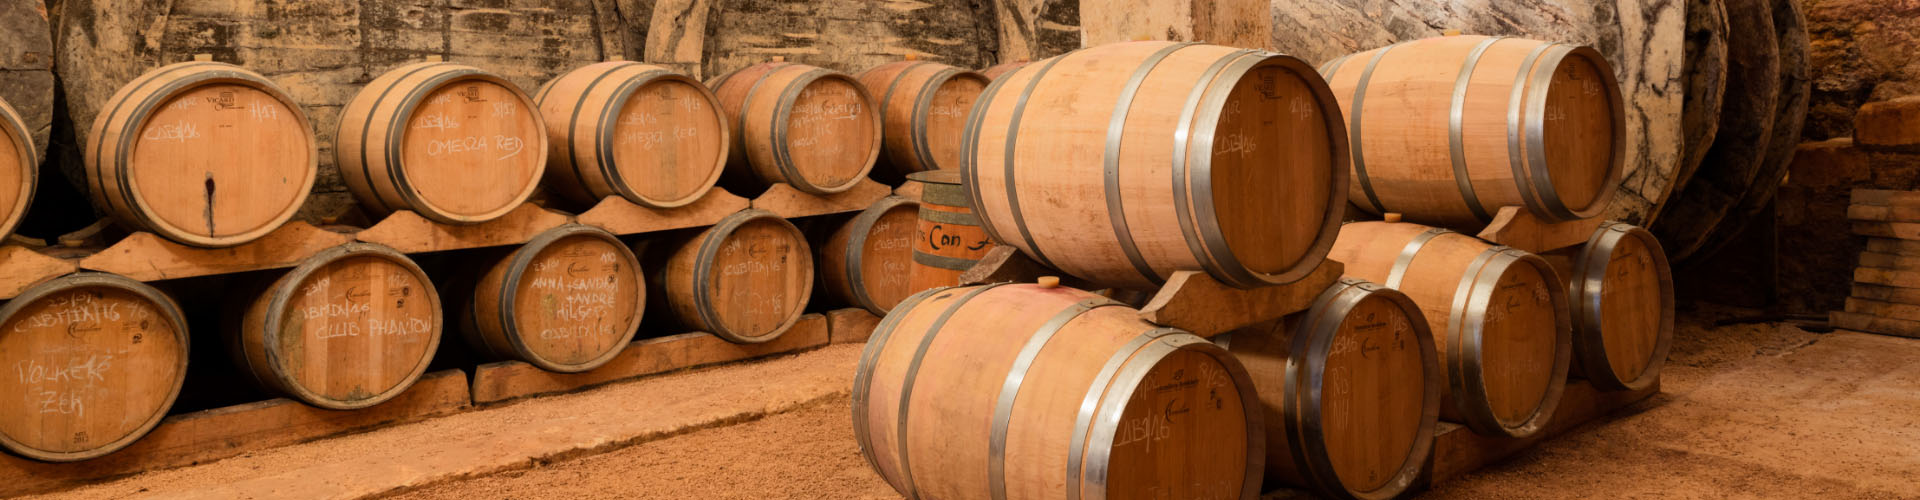 Barriles de vino en la bodega de Can Feliu